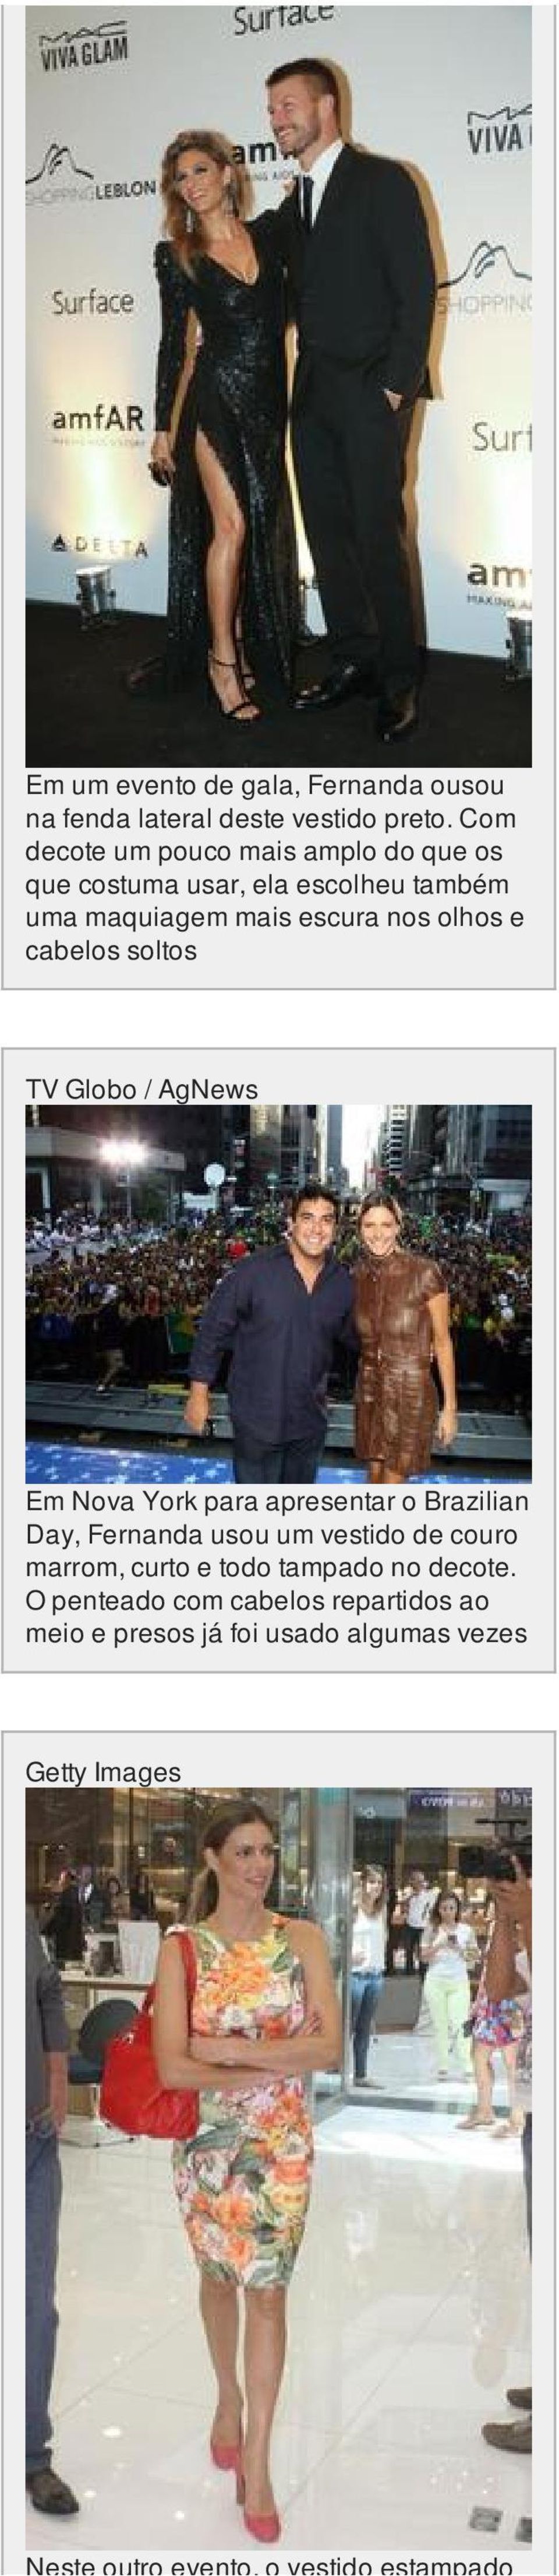 cabelos soltos TV Globo / Em Nova York para apresentar o Brazilian Day, Fernanda usou um vestido de couro marrom,